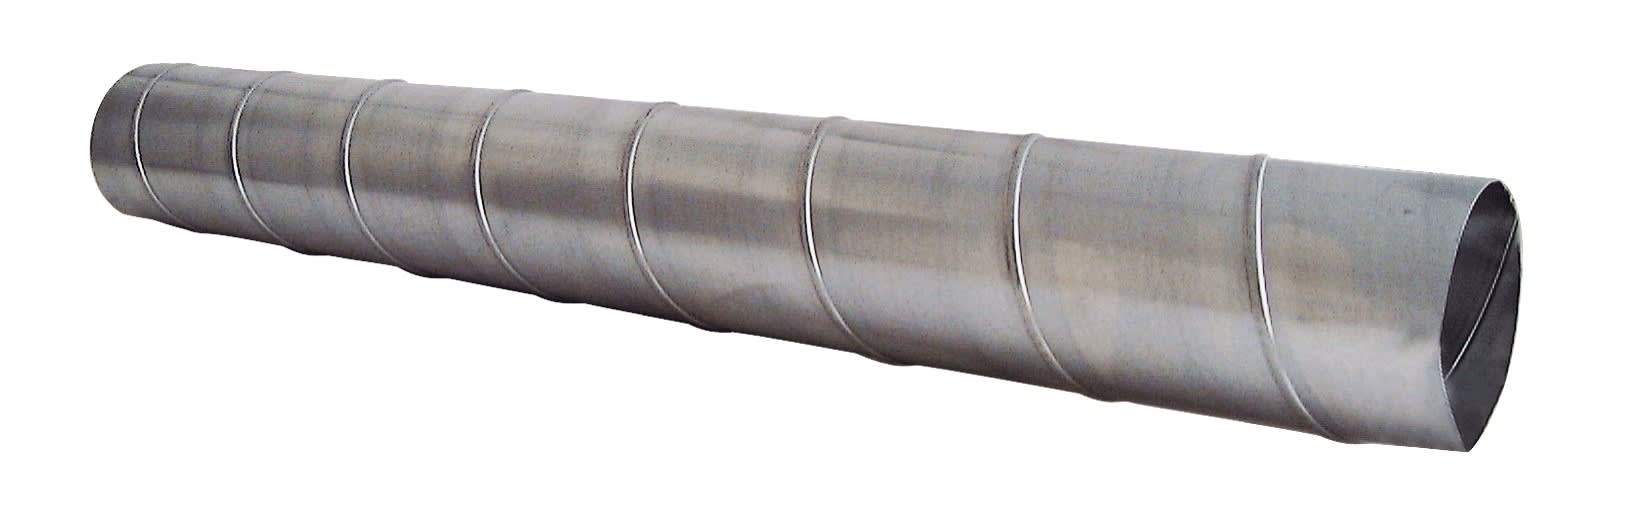 S&P - Conduit spiralé acier galvanisé, D 250 mm, longueur 3 m